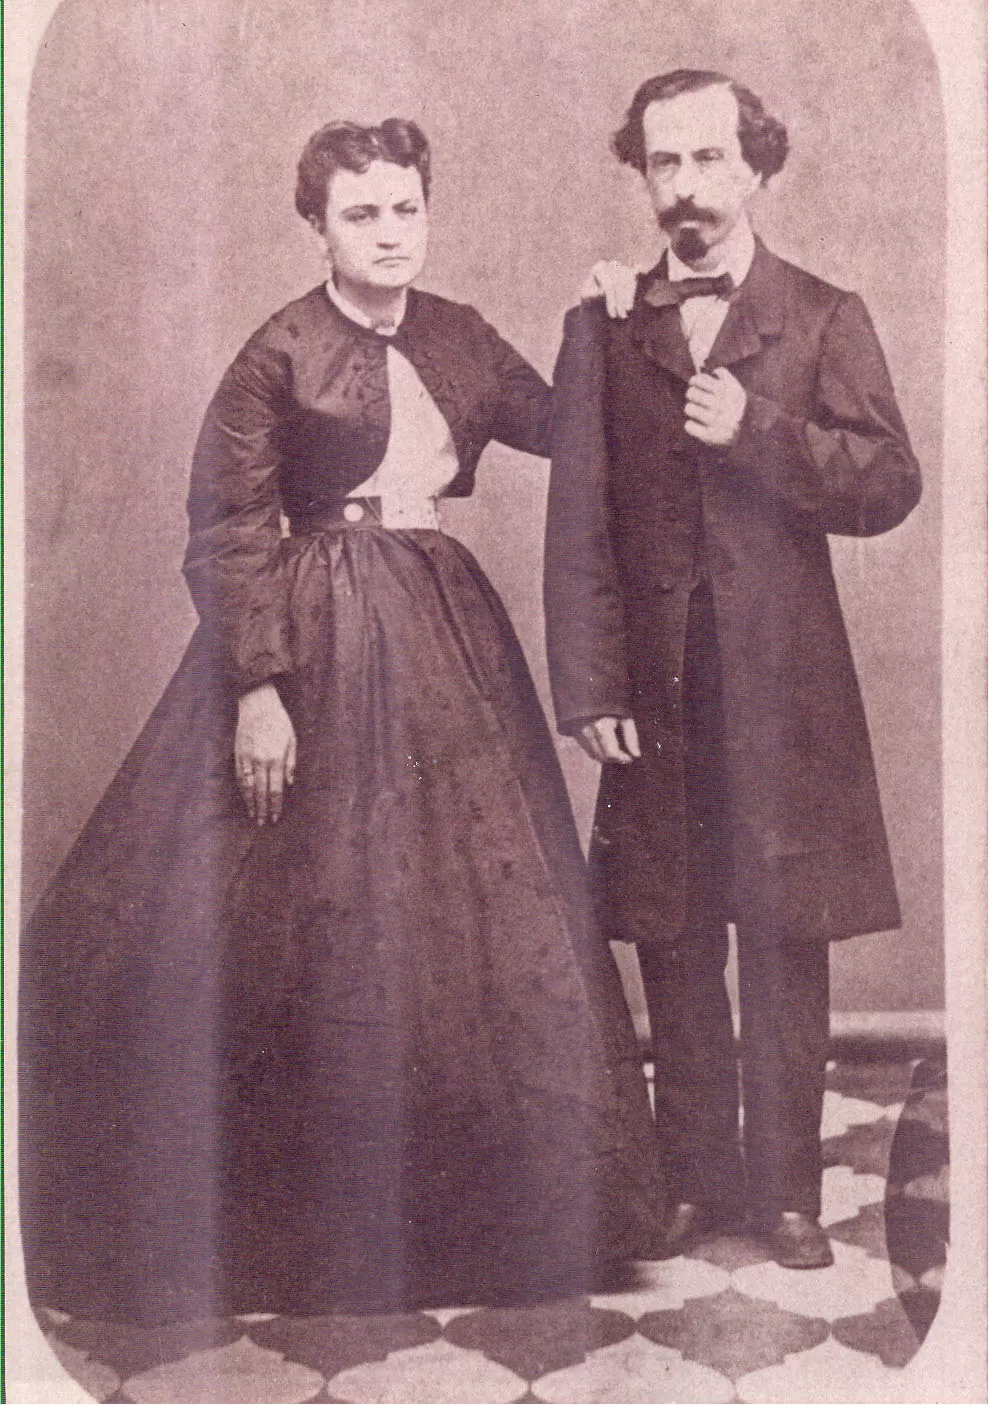 GERÓNIMO CORTÉS. El destacado maestro del Derecho, en una foto juvenil tomada en Tucumán, con su esposa Agustina Bascary la gaceta / archivo